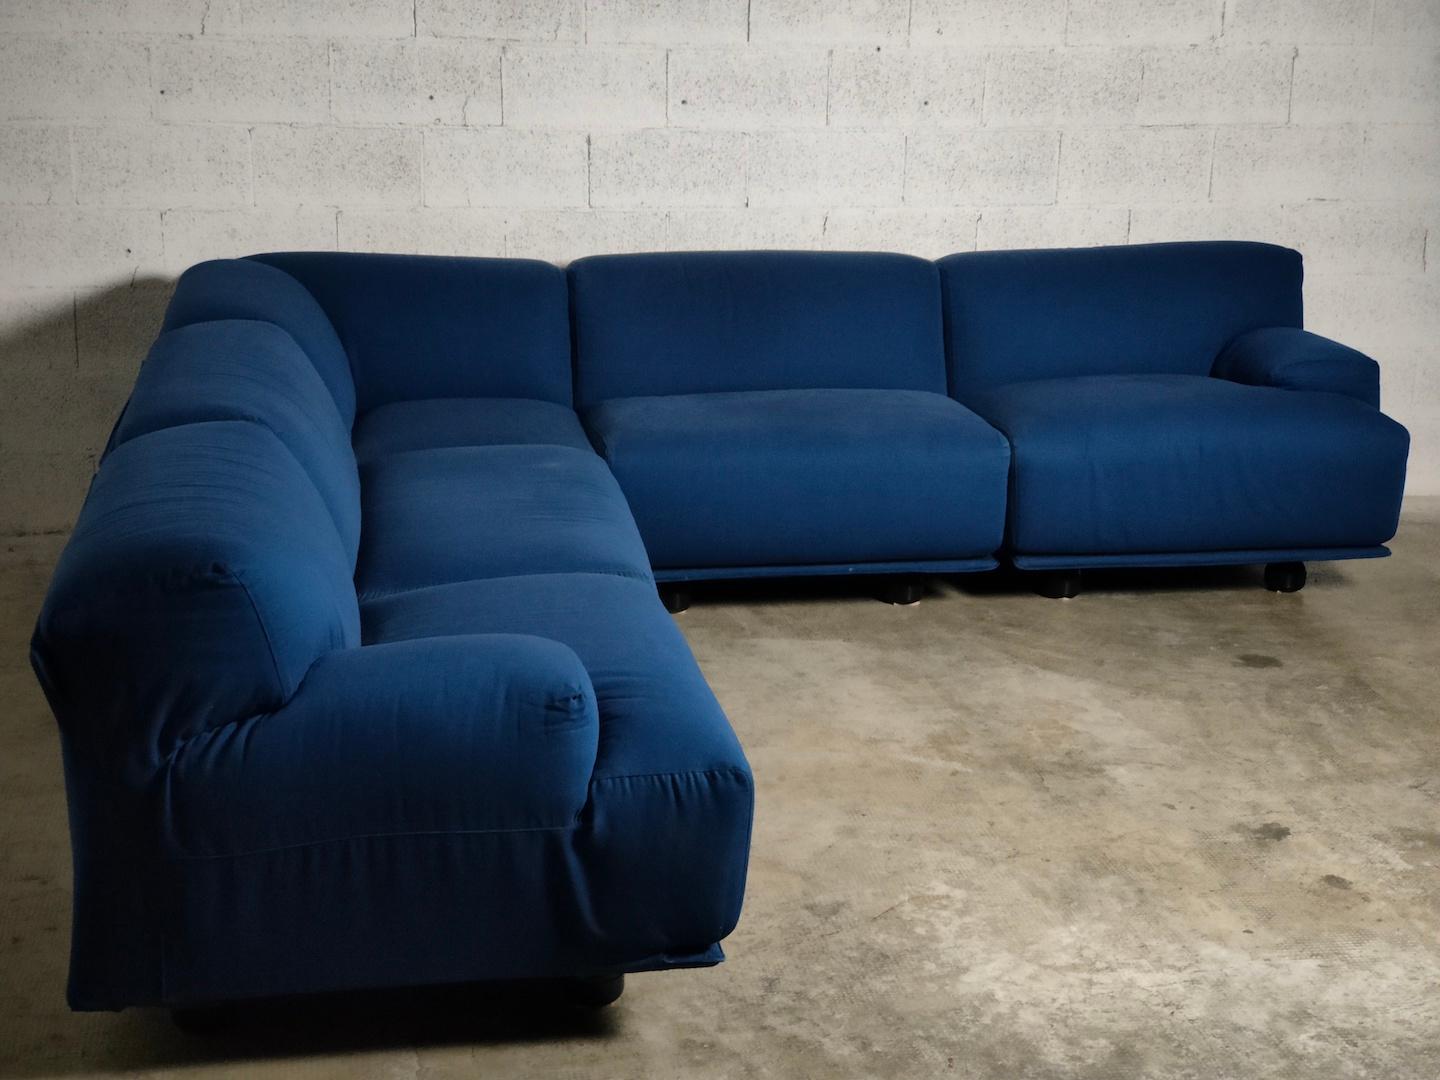 Fiandra modular sofa by Vico Magistretti for Cassina 70s For Sale 6